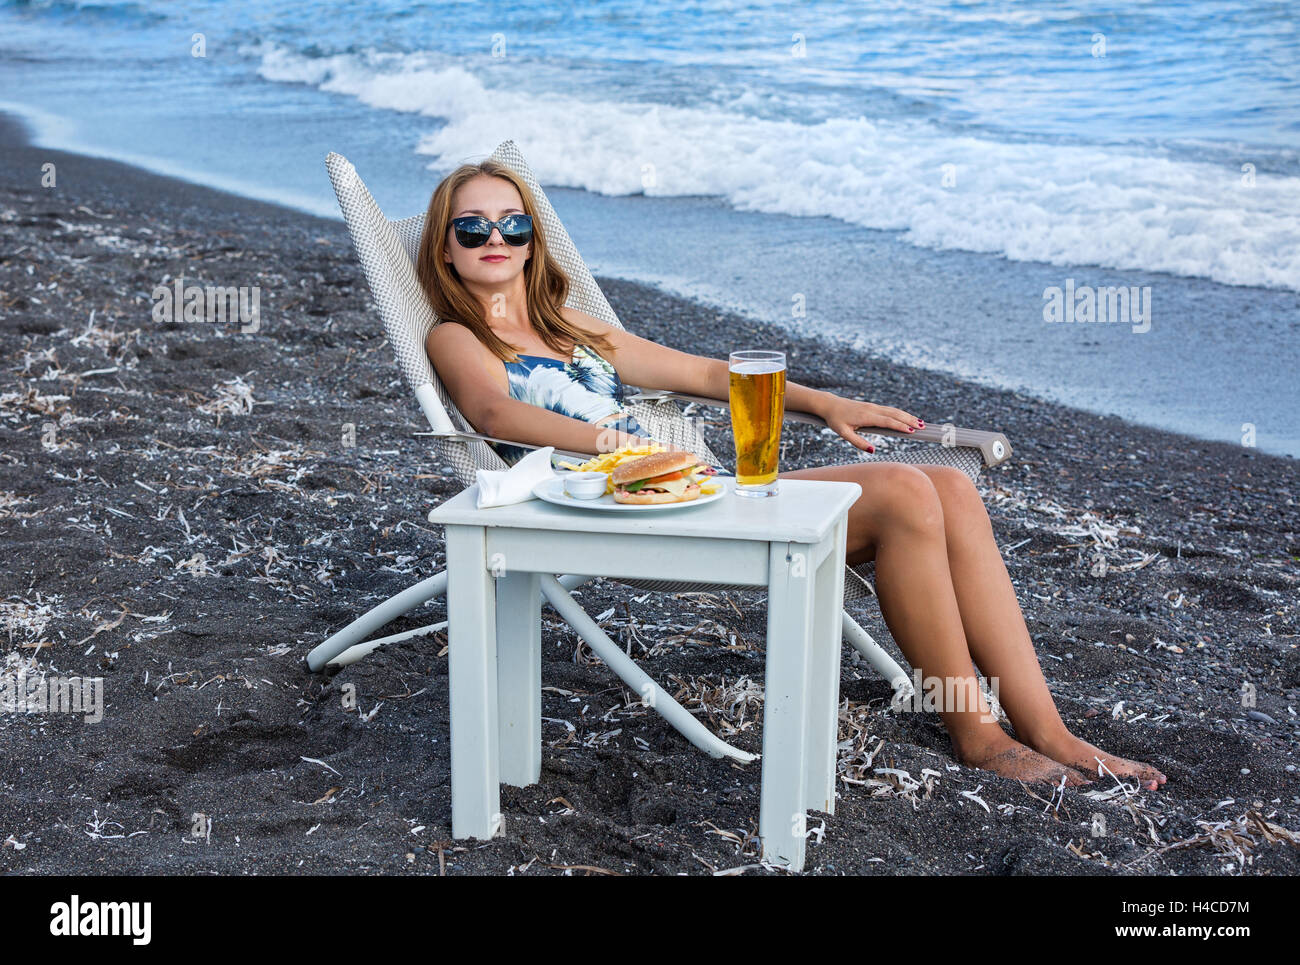 Giovane donna sulla spiaggia e fast food sul tavolo Foto Stock